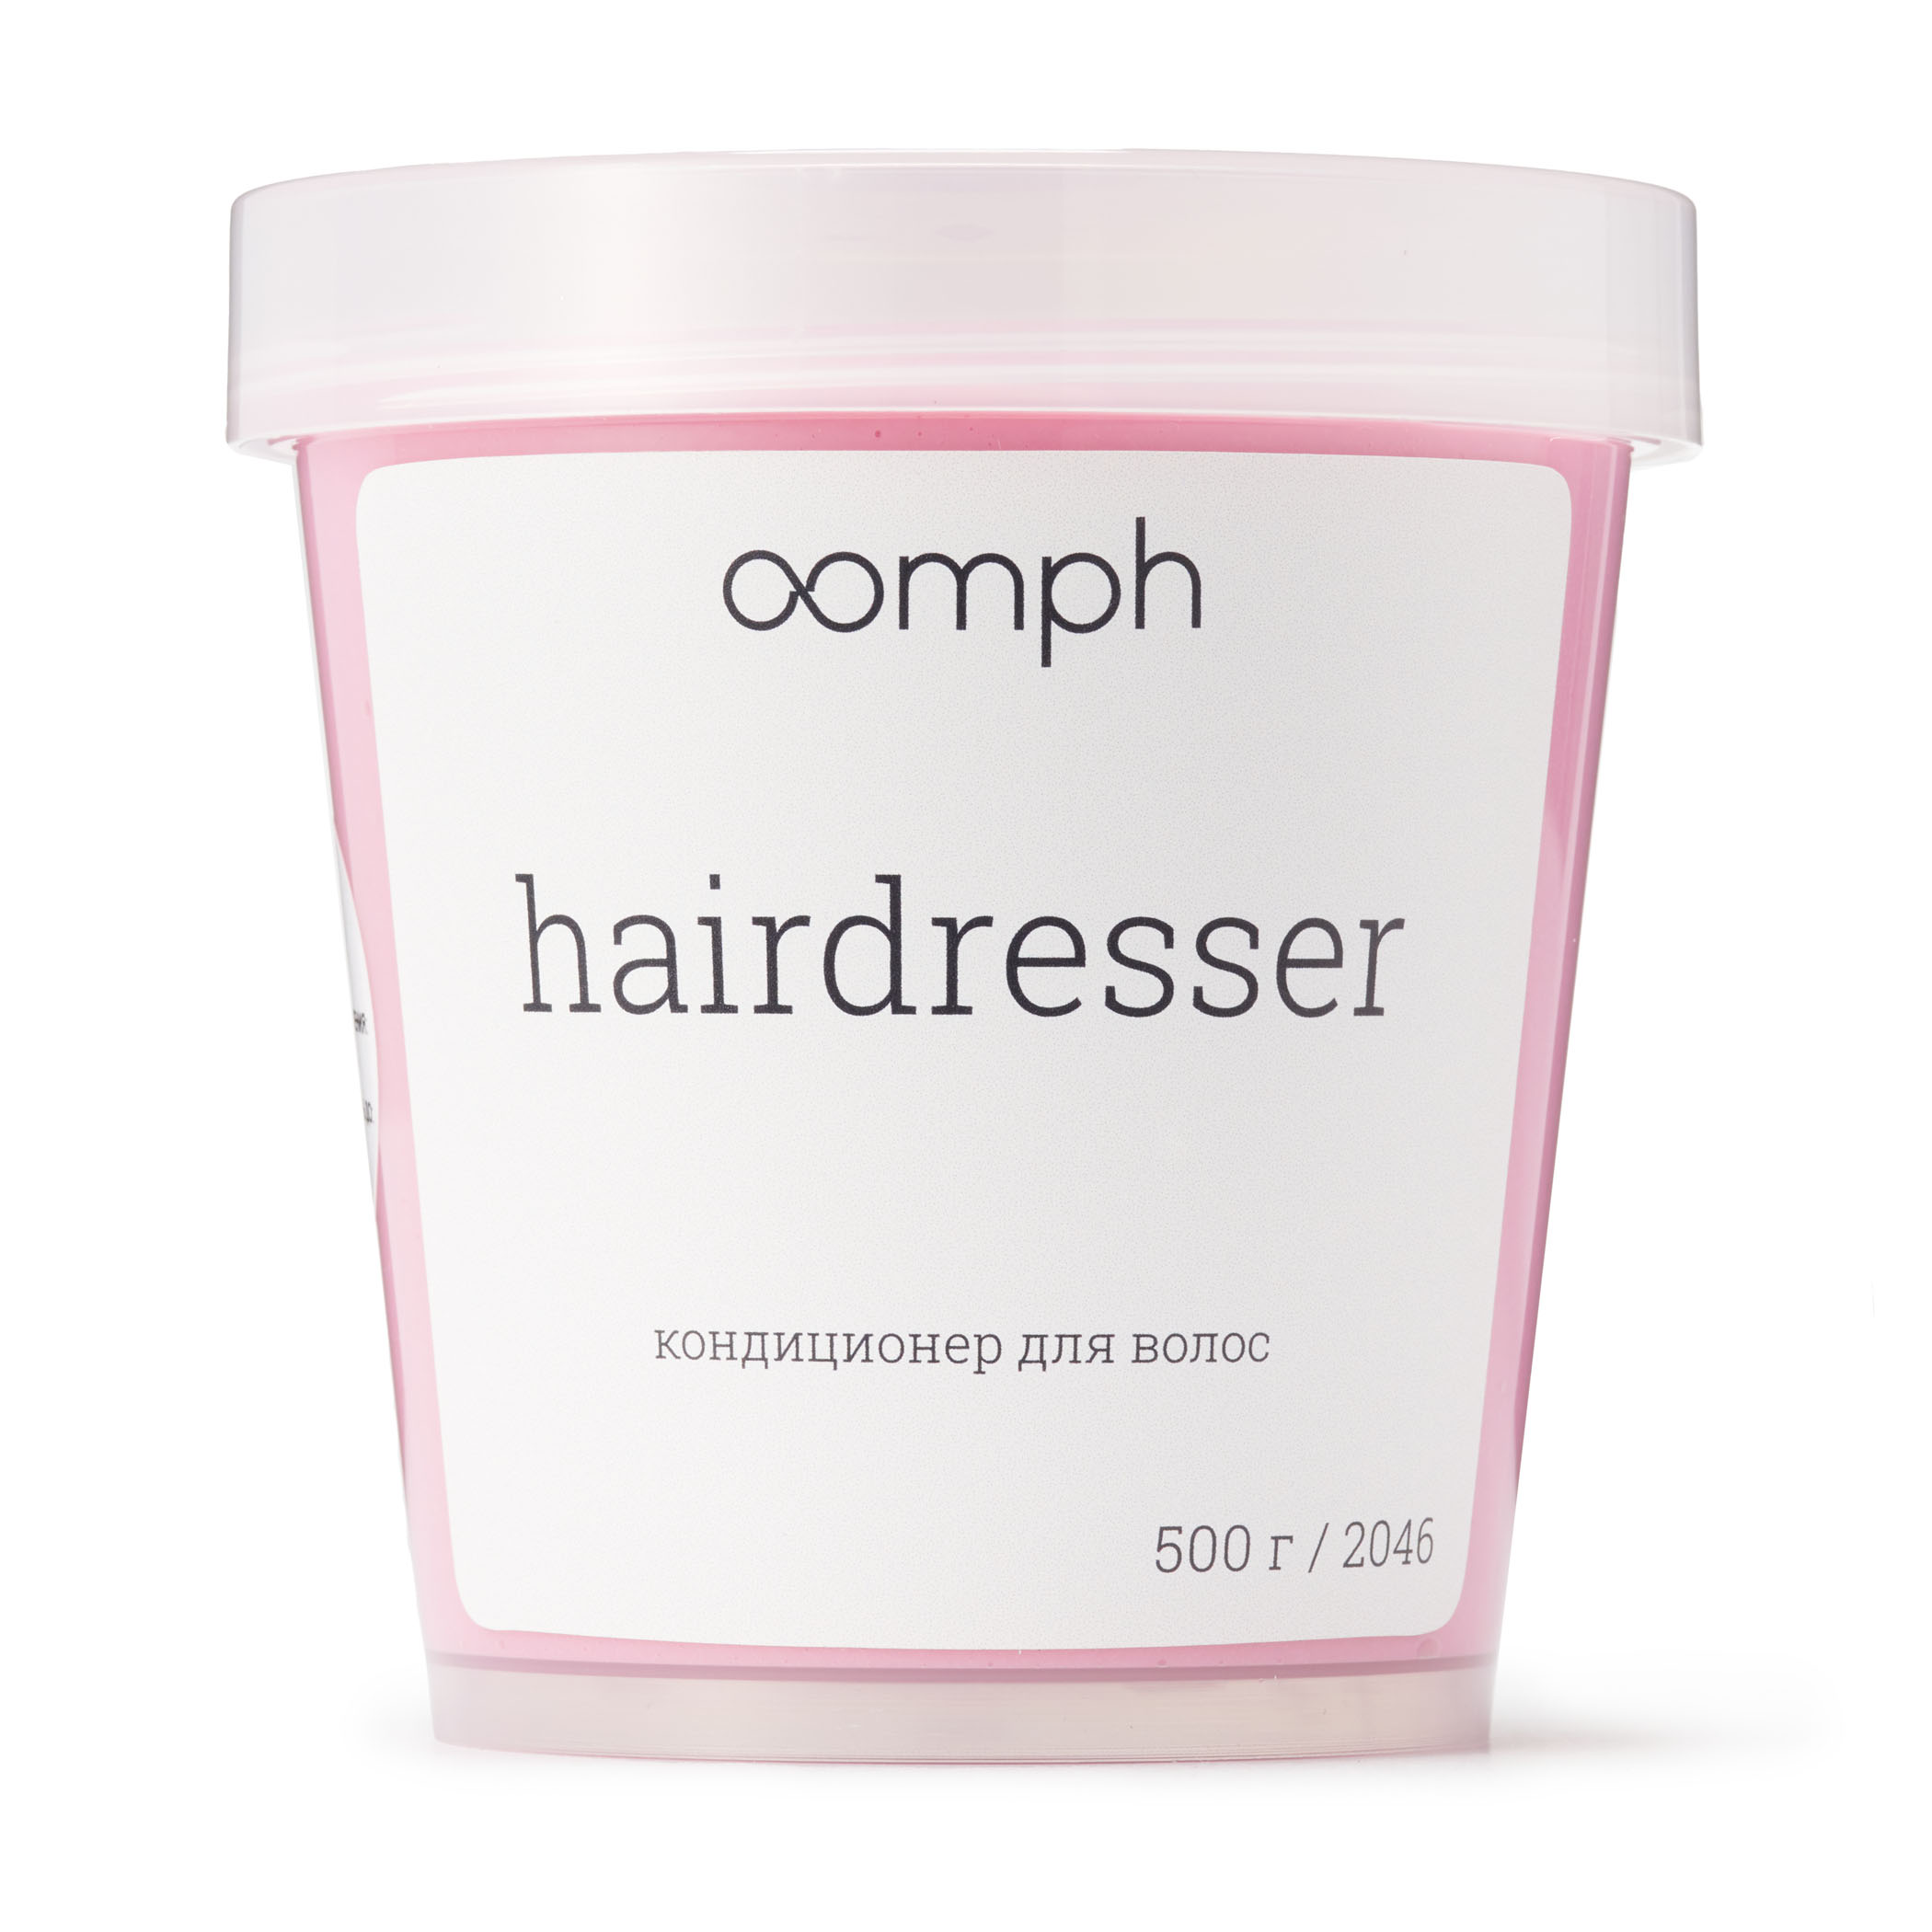 Кондиционер для волос Oomph Hairdresser 500г